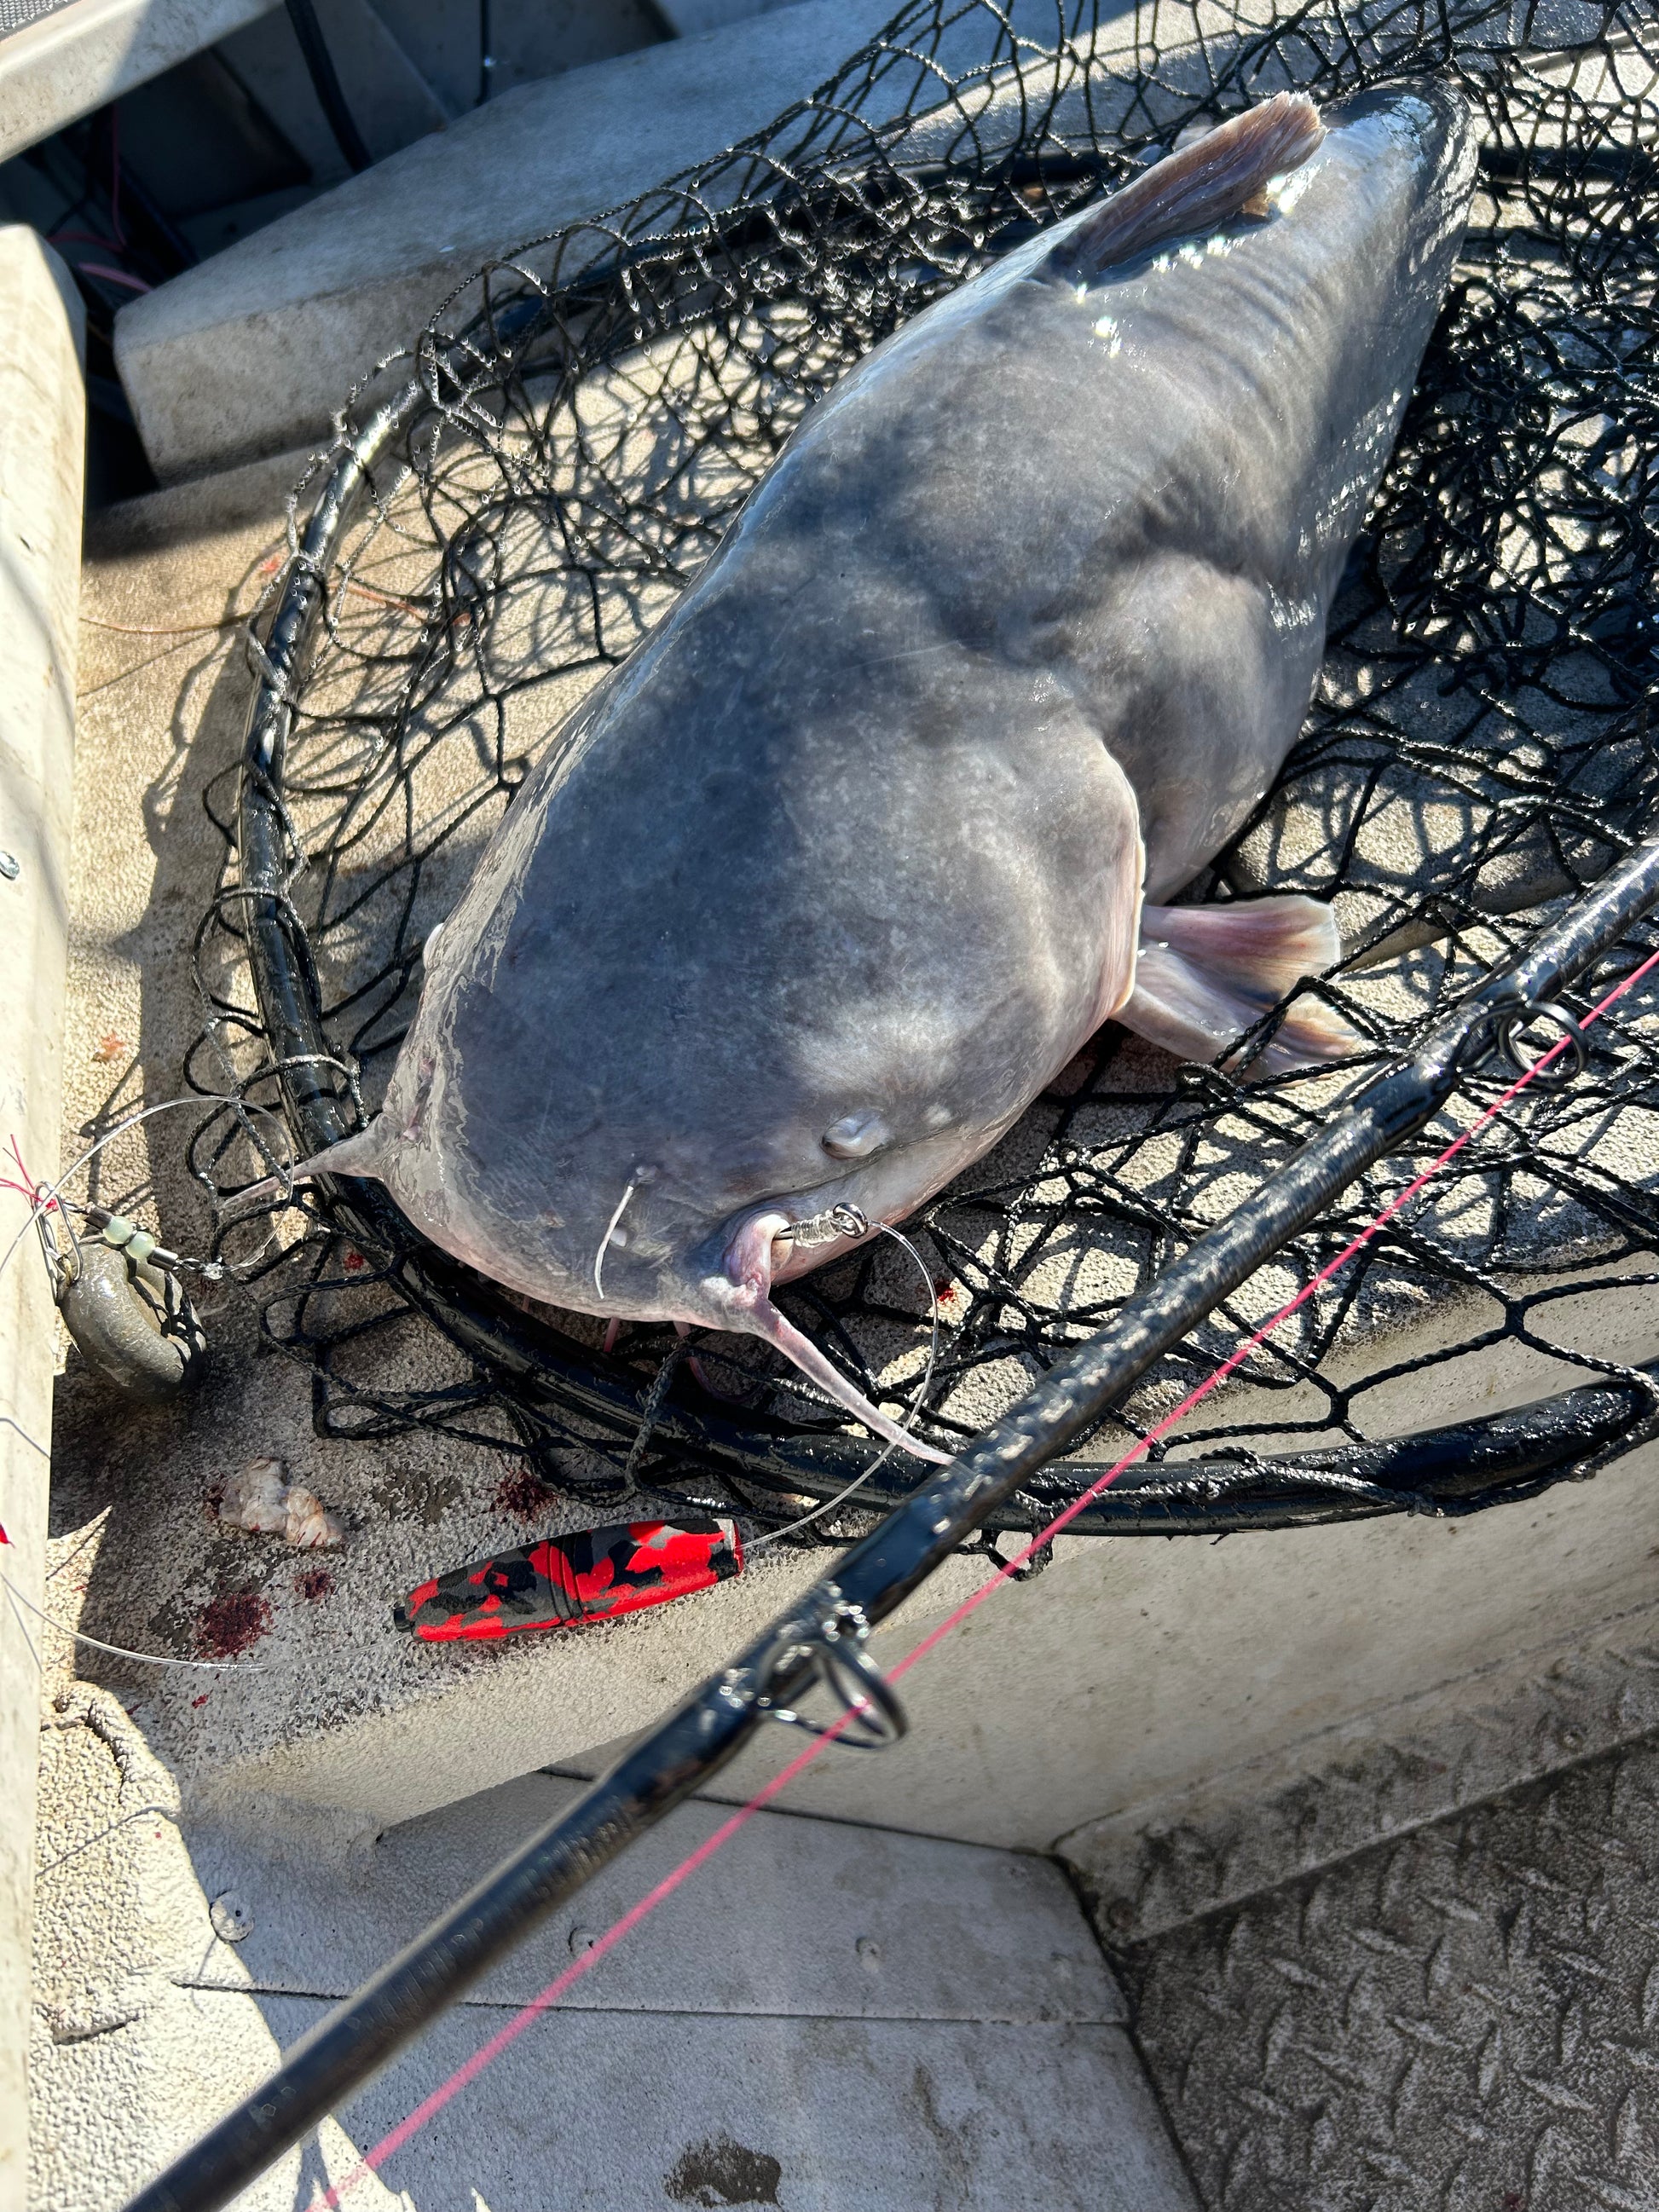 EVA Peg Float 3” – Ironside Catfishing